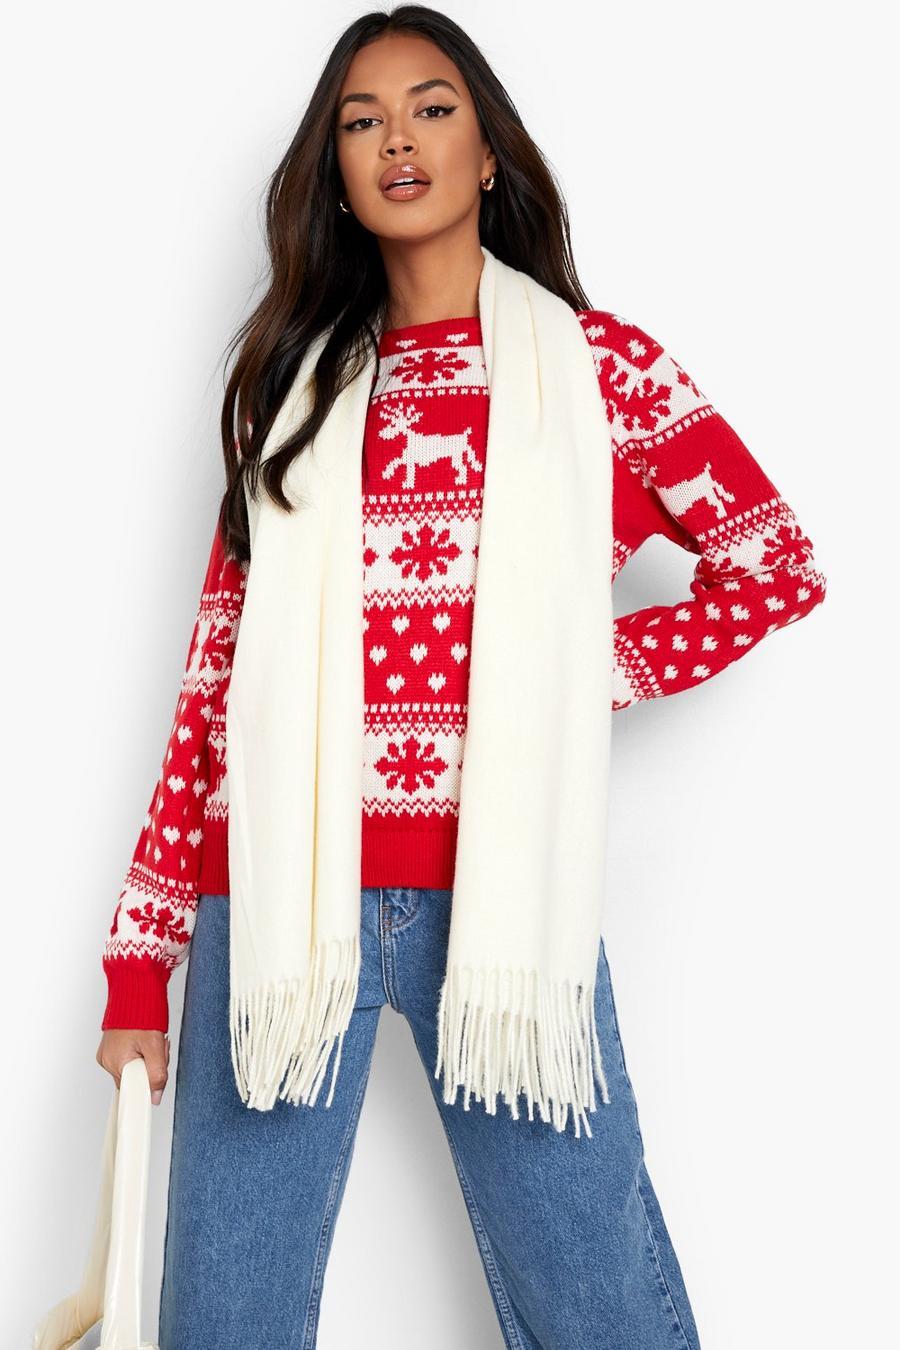 Red Reindeer & Snowflake Christmas Sweater